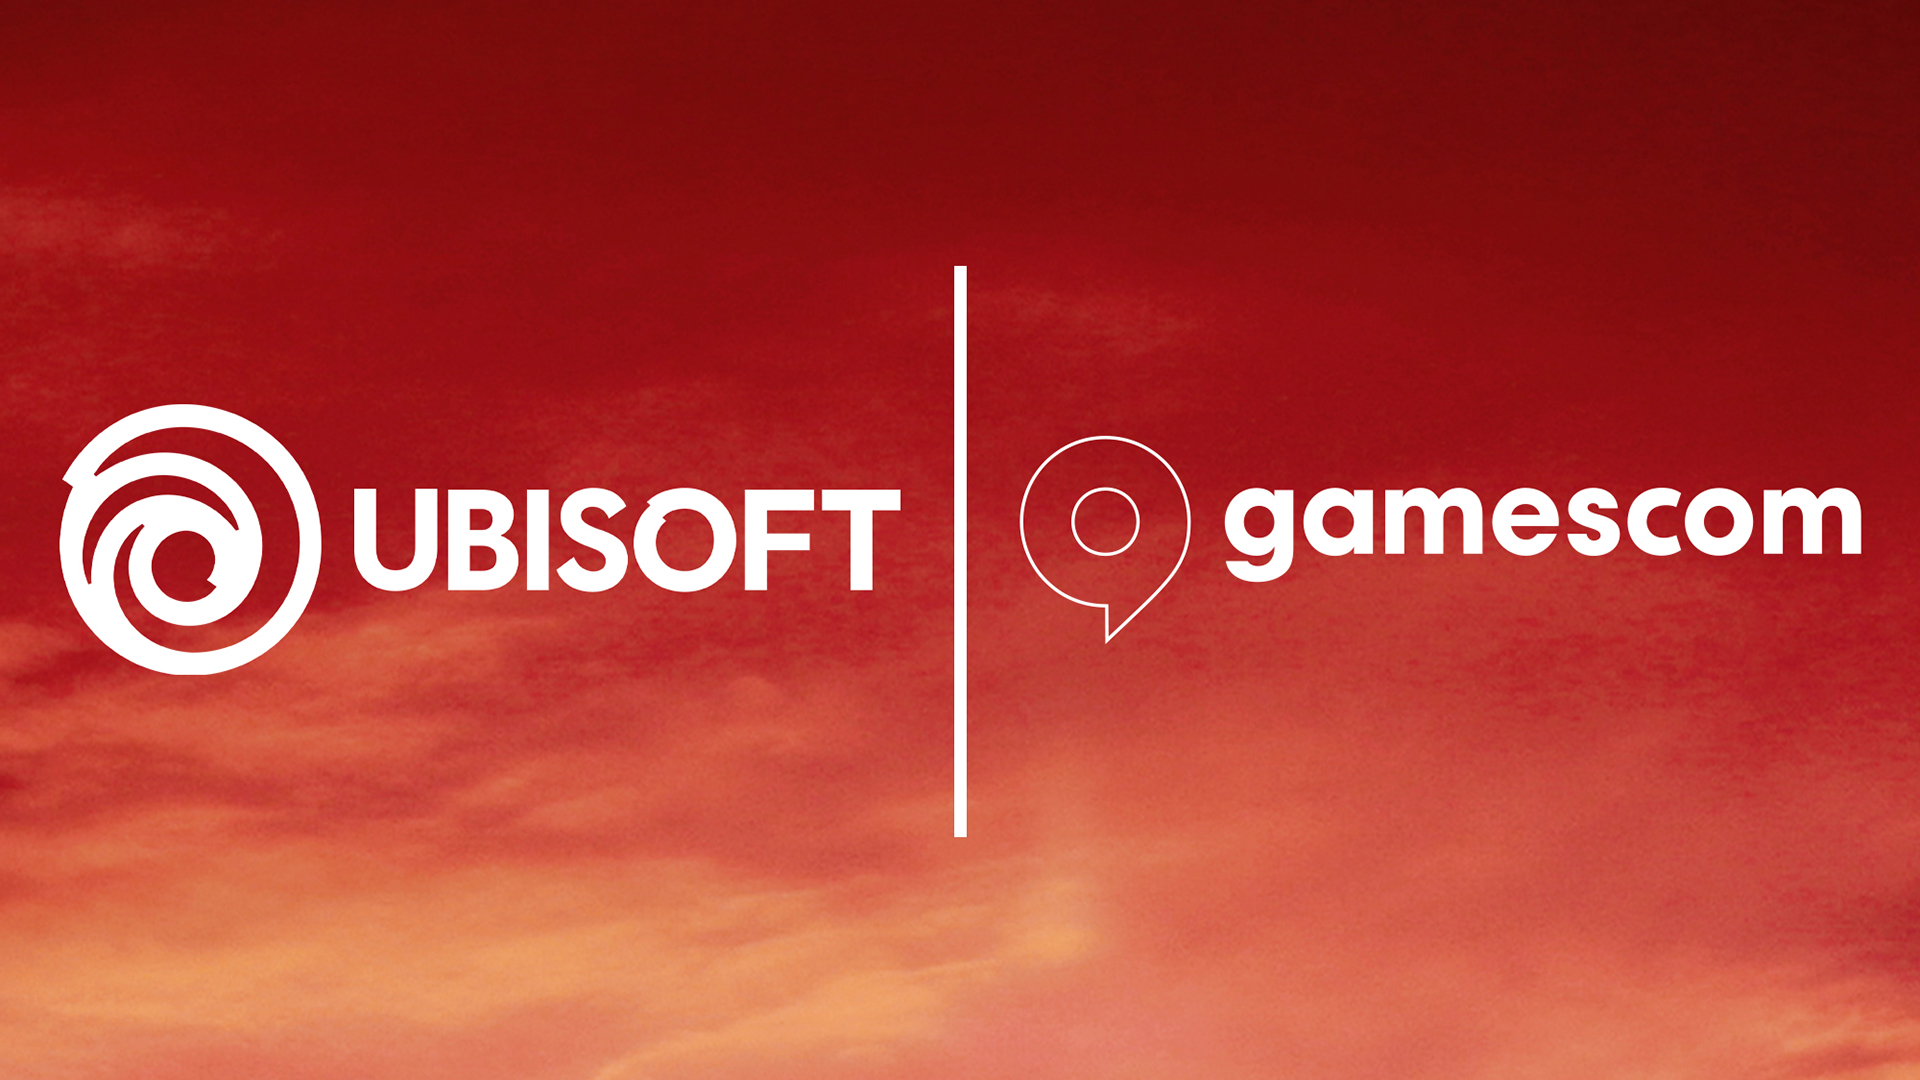 Ubisoft ยืนยันจะเข้าร่วมงาน Gamescom 2022